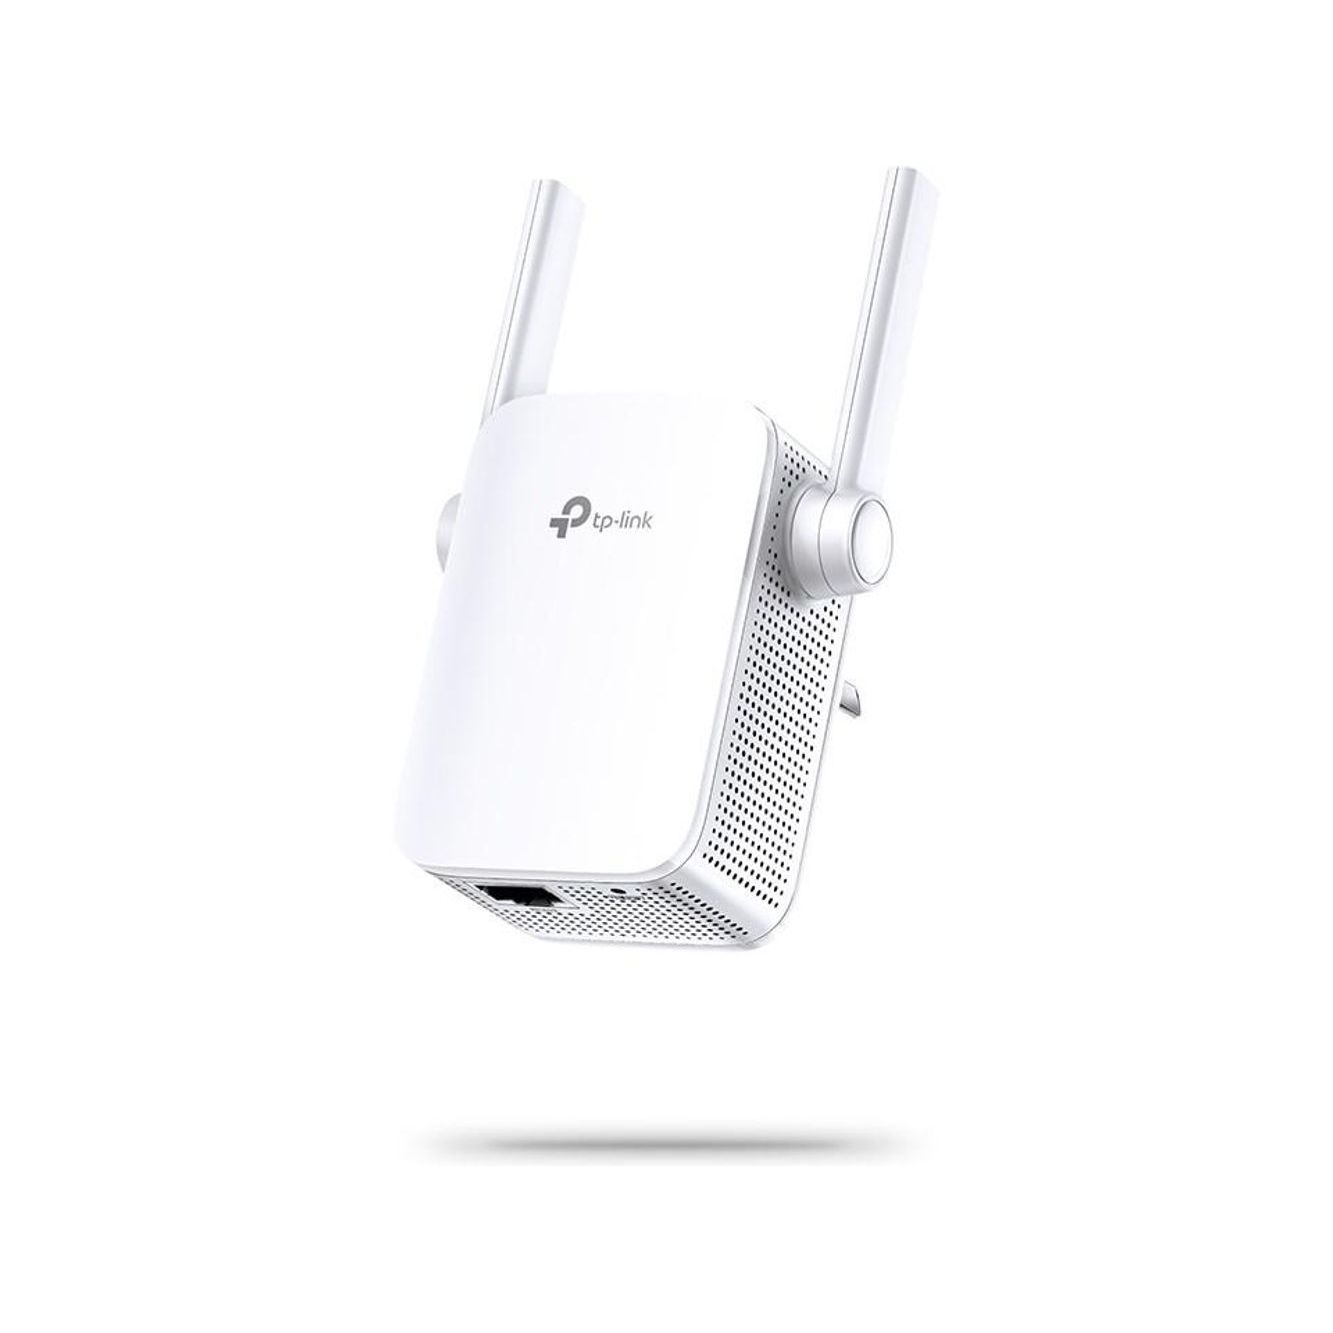 TL-WA855RE - TP-Link TL-WA855RE 300Mbps Wi-Fi Range Extender